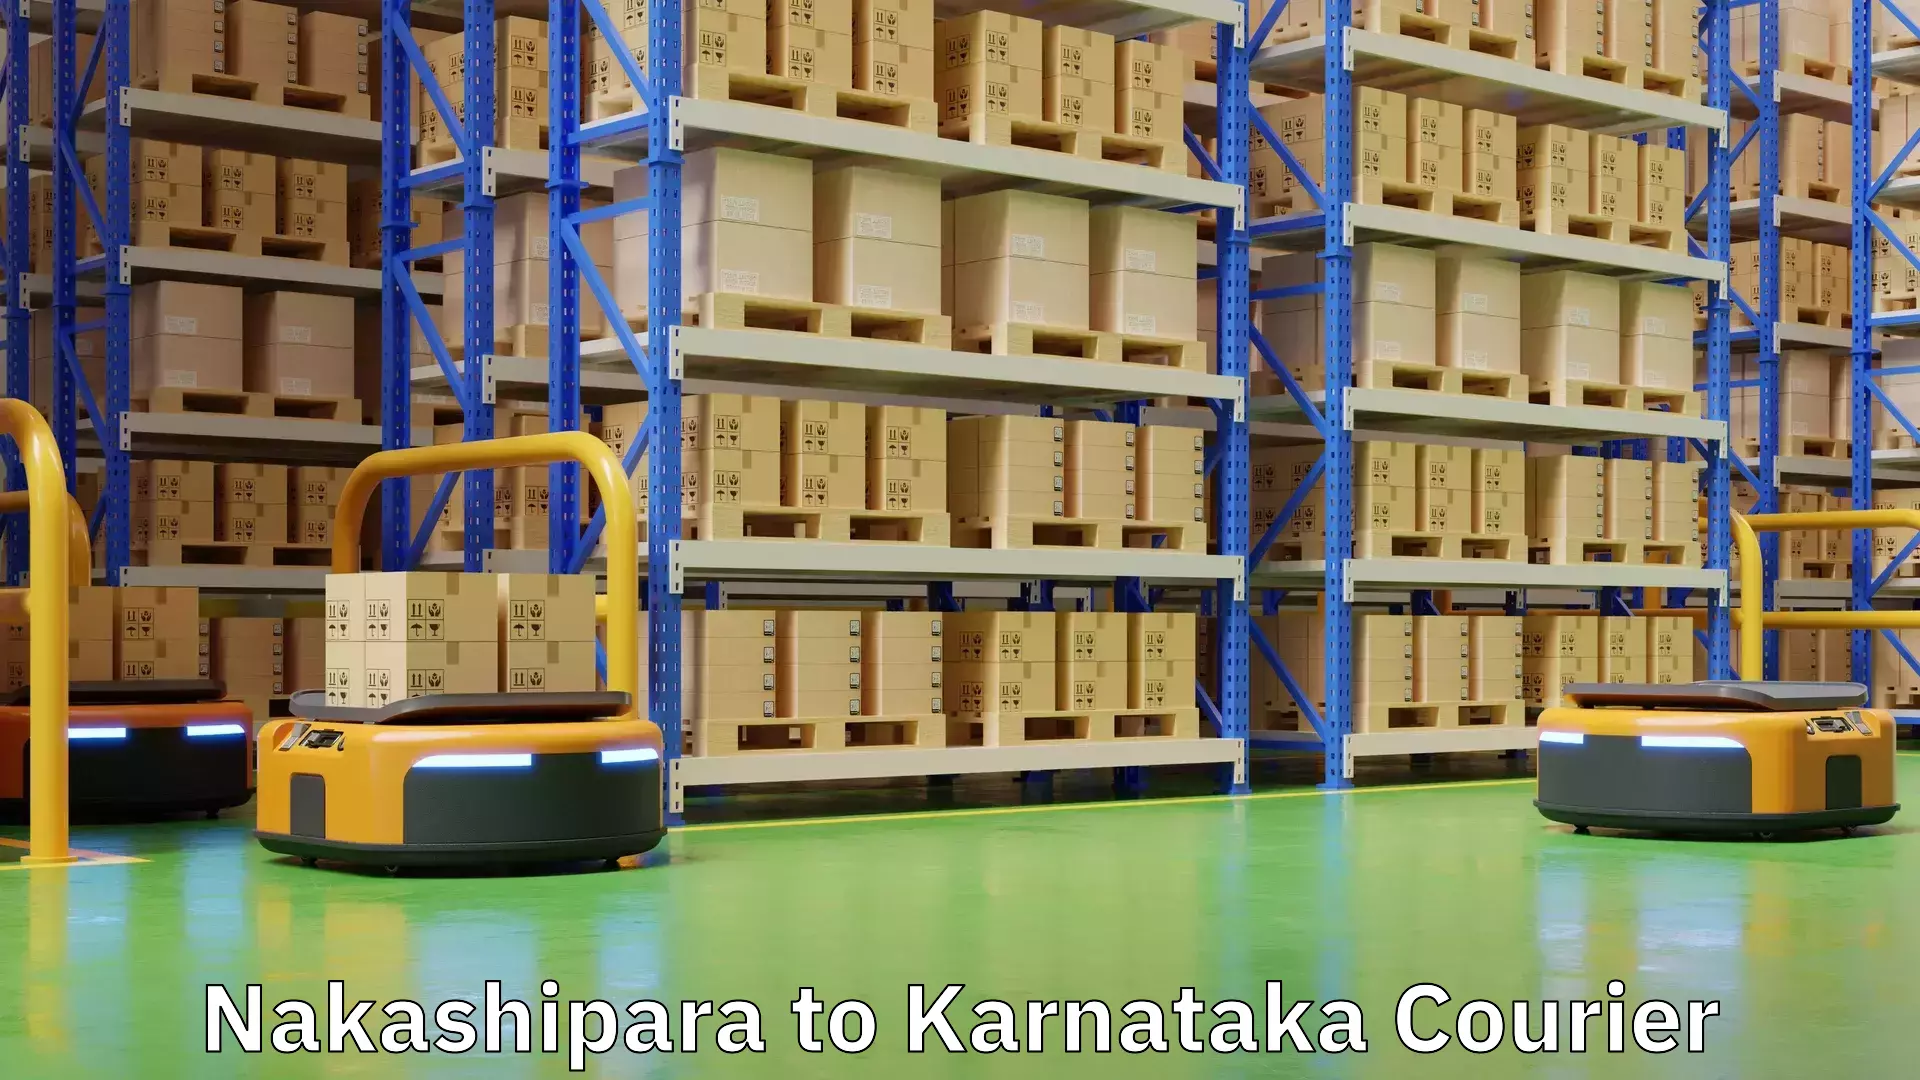 Budget-friendly shipping in Nakashipara to Karnataka